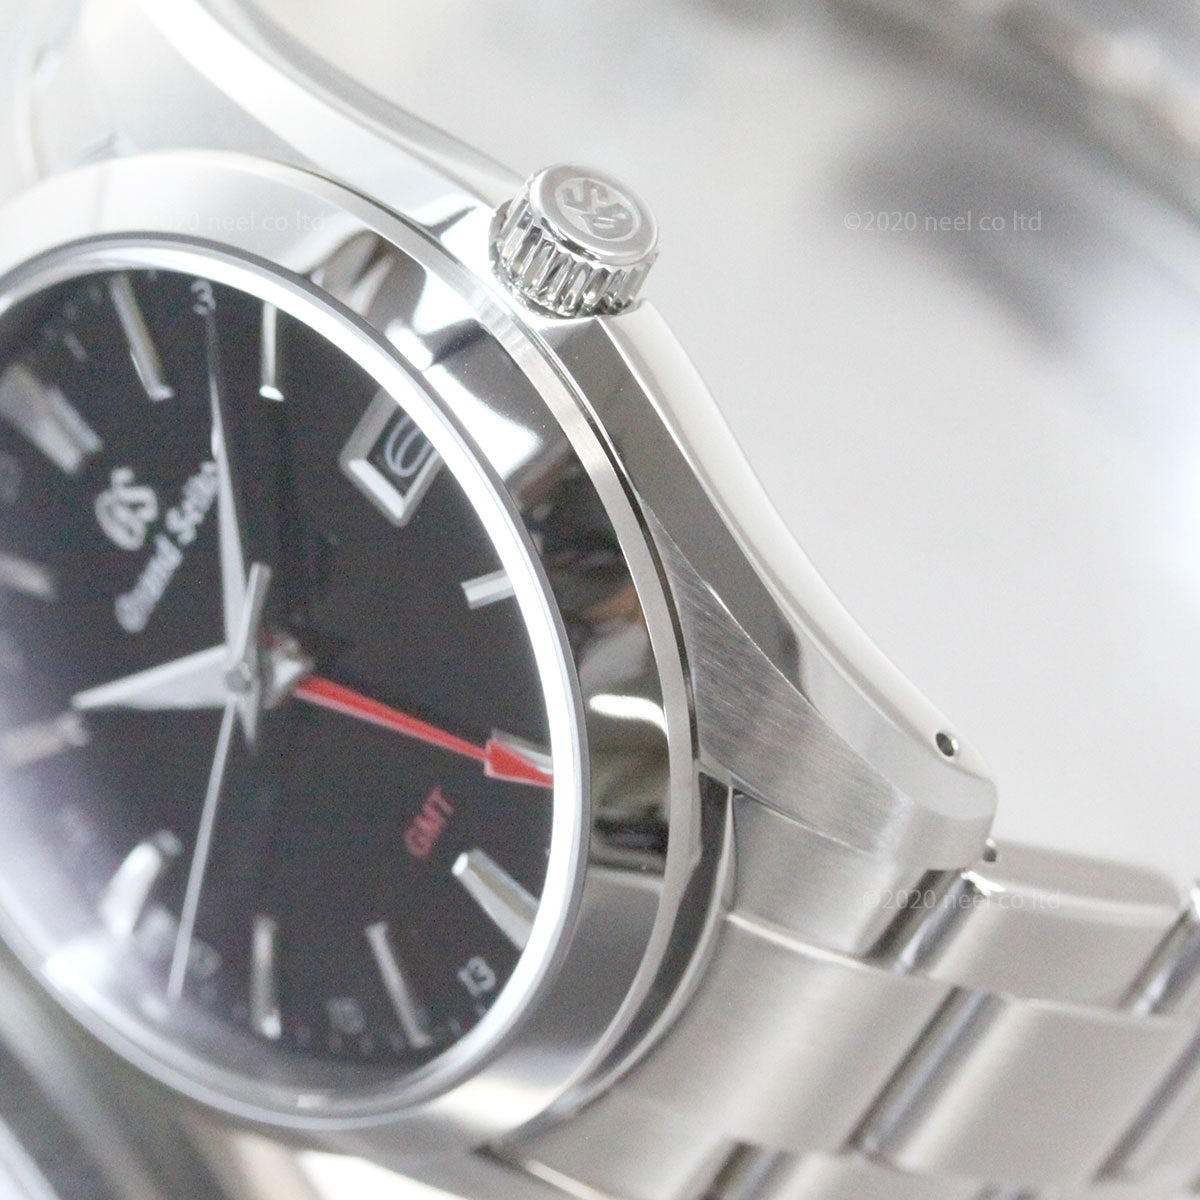 グランドセイコー 9Fクオーツ GMT メンズ 腕時計 SBGN013 ブラック メタルベルト カレンダー スクリューバック 9F86【正規品】【36回無金利ローン】